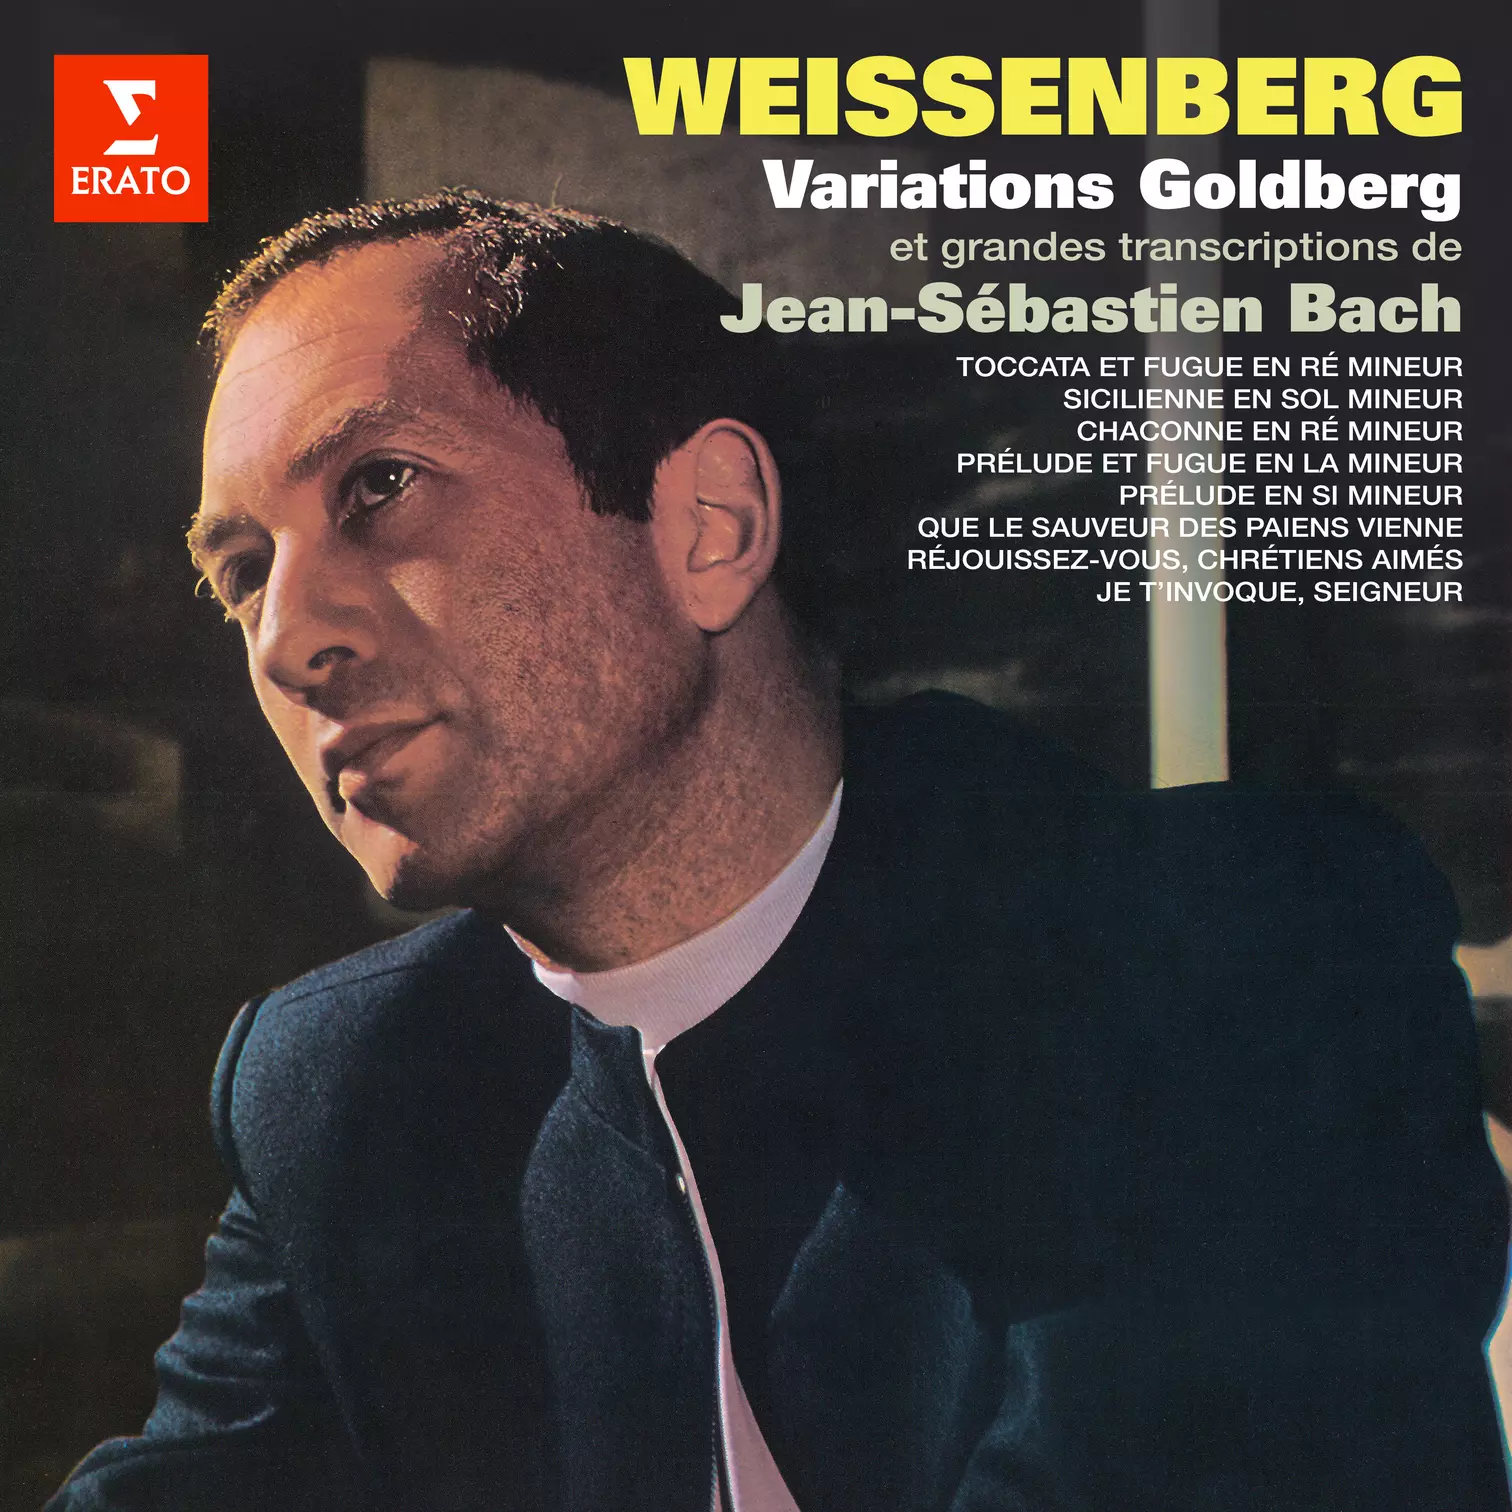 Bach: Variations Goldberg & Grandes transcriptions